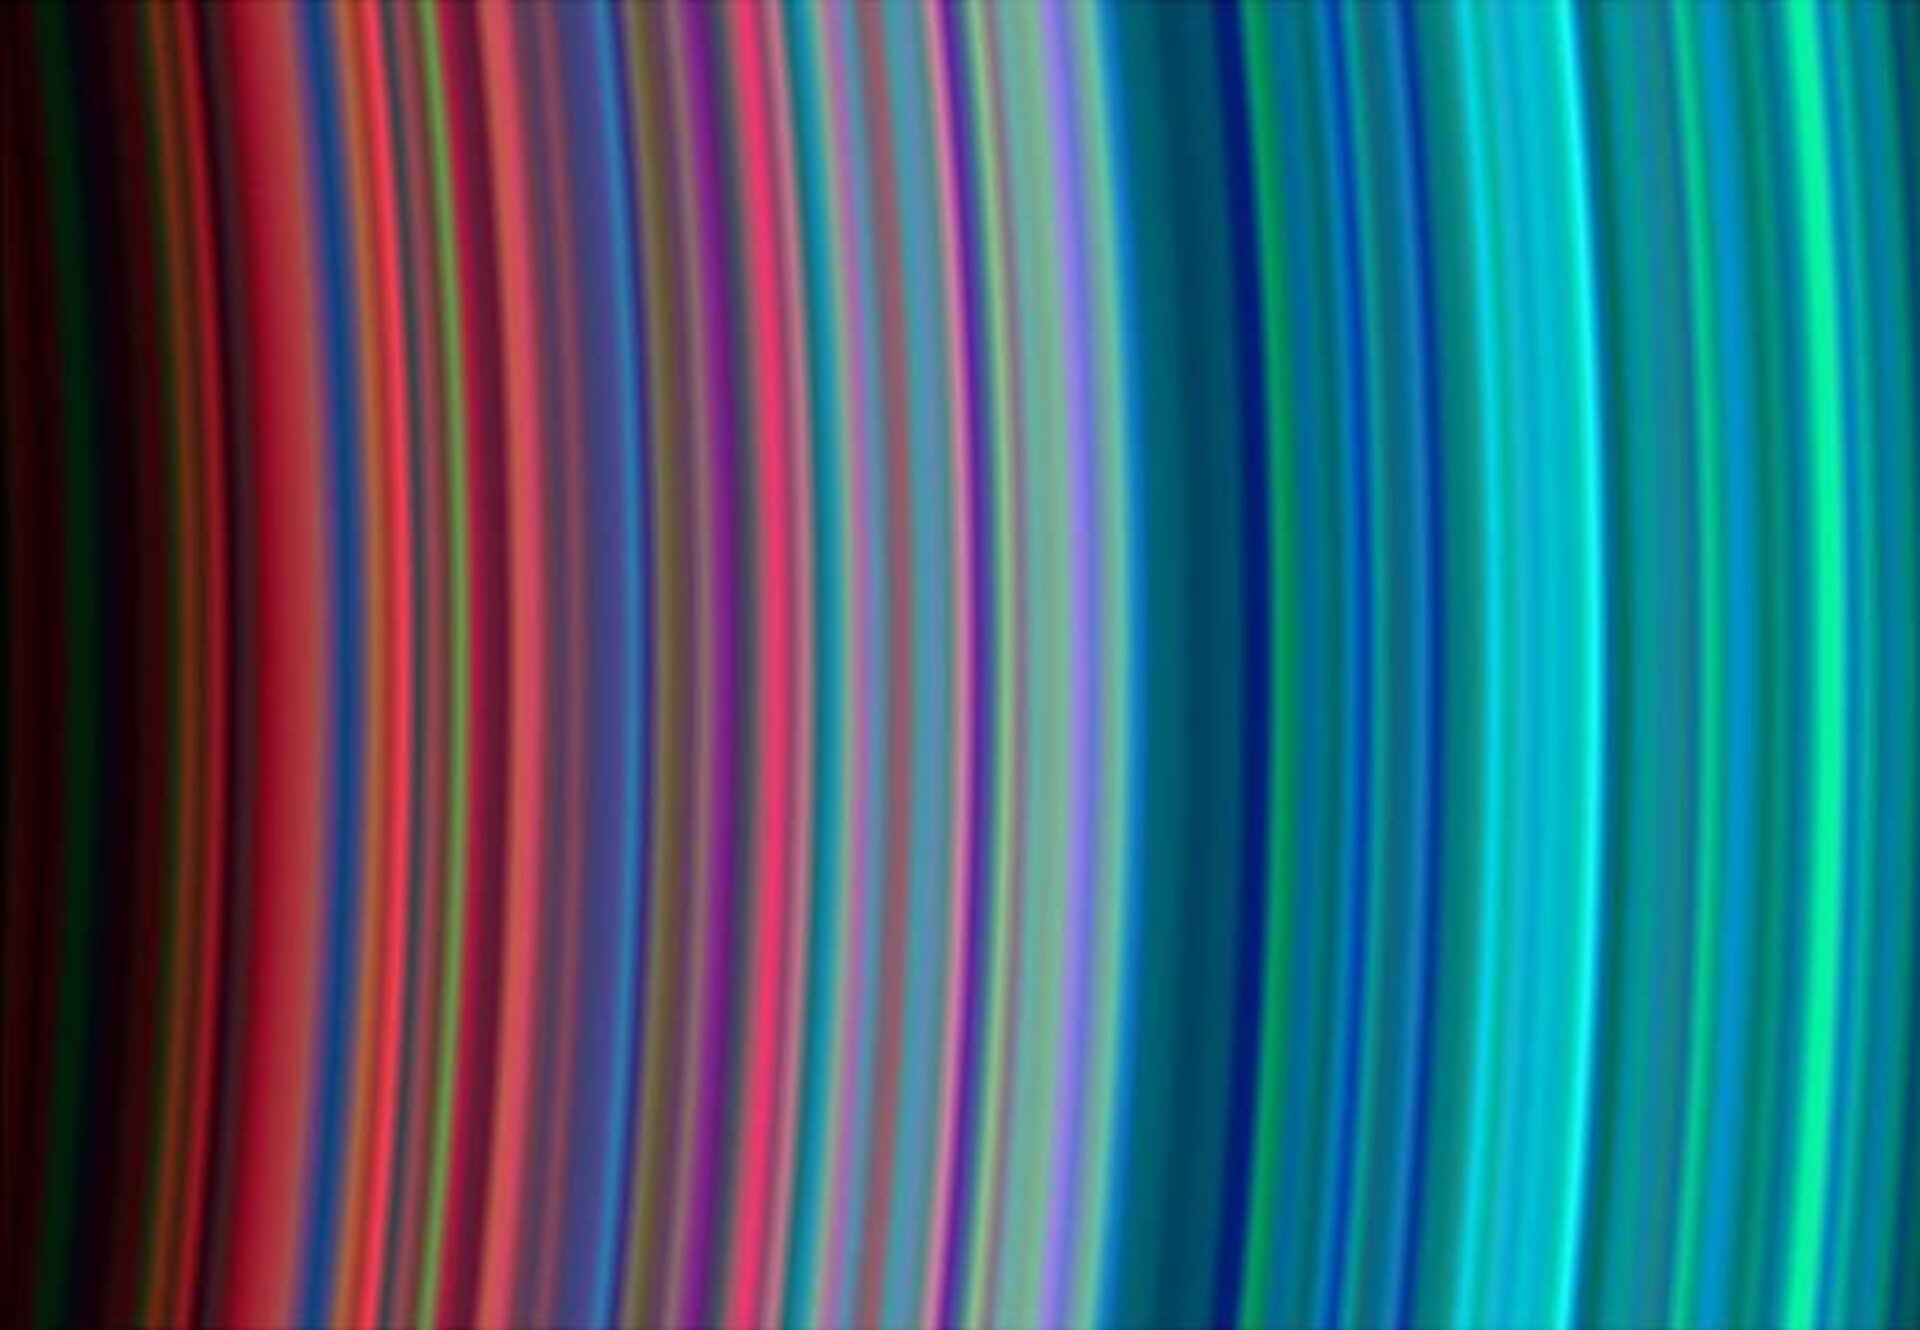 Saturn’s rainbow rings